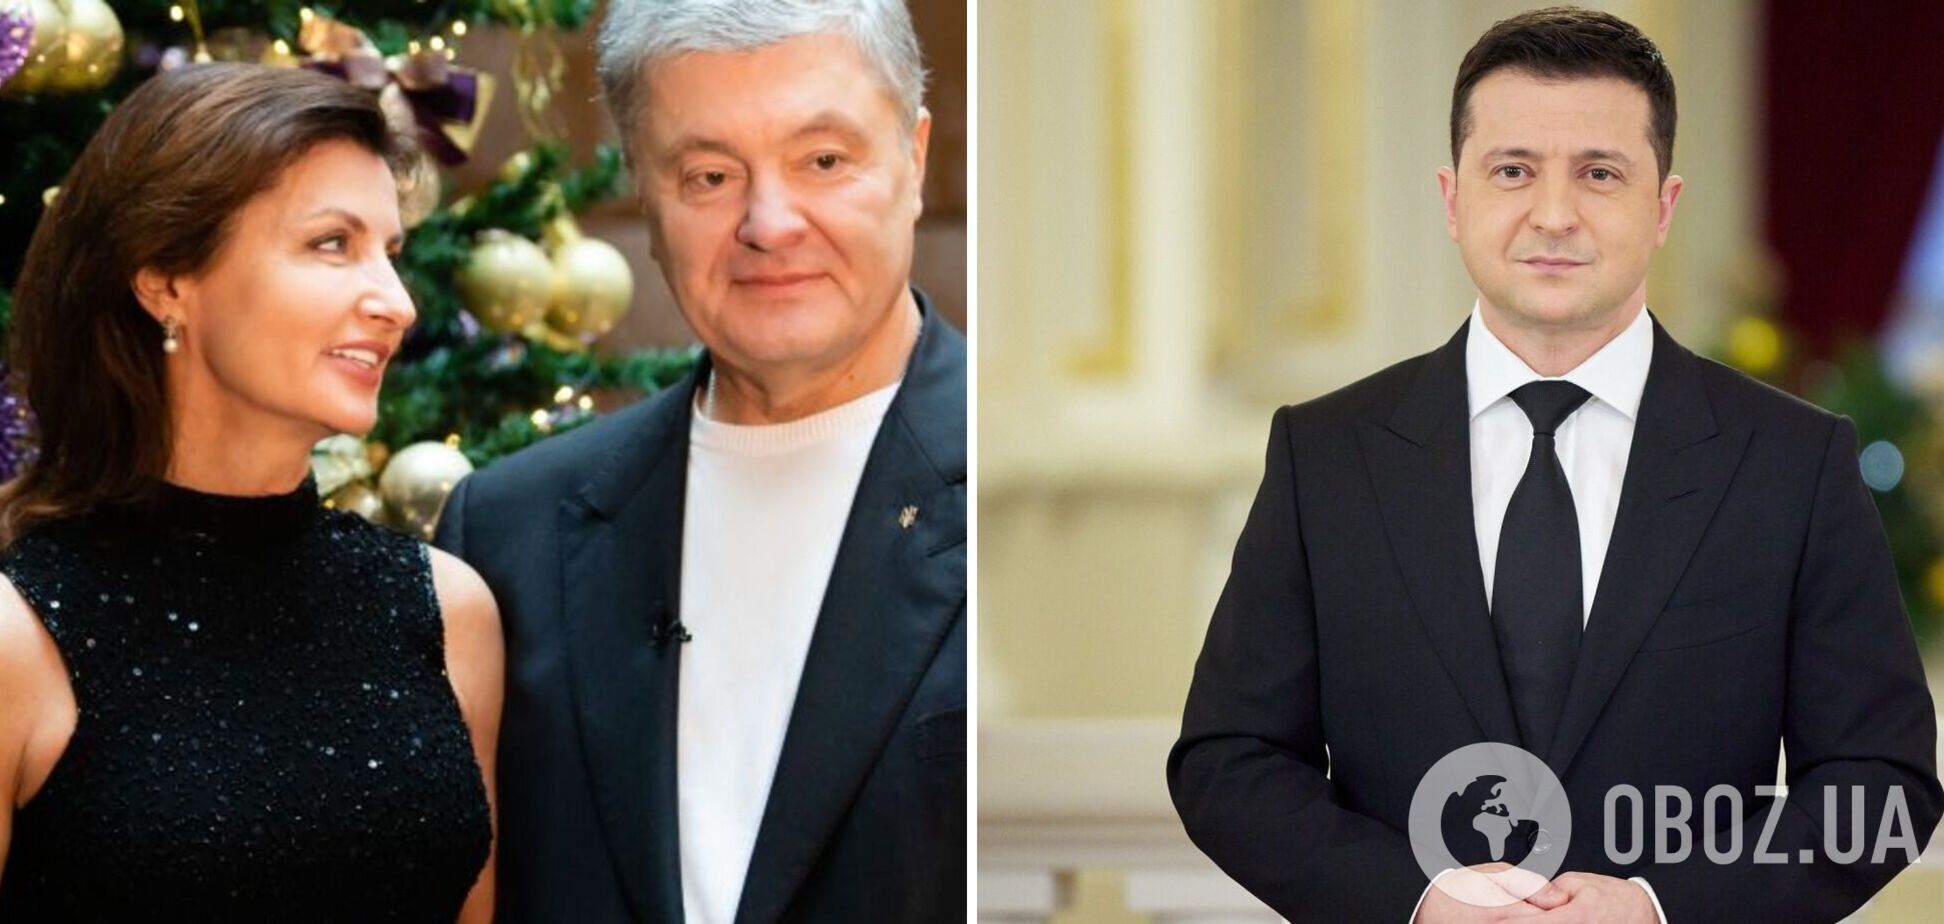 Новогоднее поздравление Порошенко набрало больше просмотров на YouTube, чем обращение Зеленского